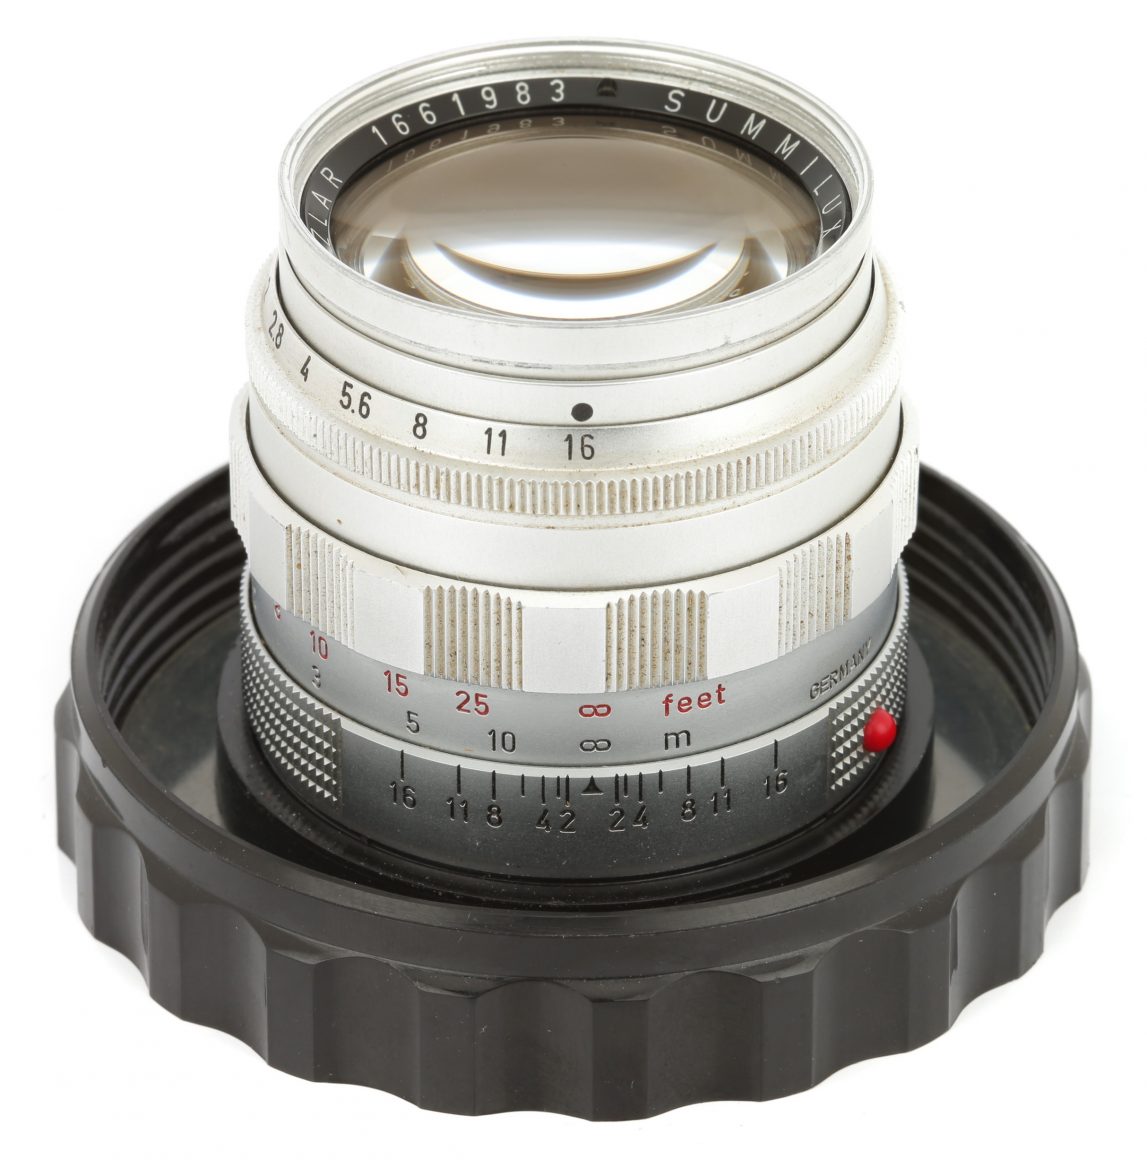 カメラ レンズ(単焦点) Leitz Wetzlar SUMMILUX 50mm F/1.4 [I] | LENS-DB.COM